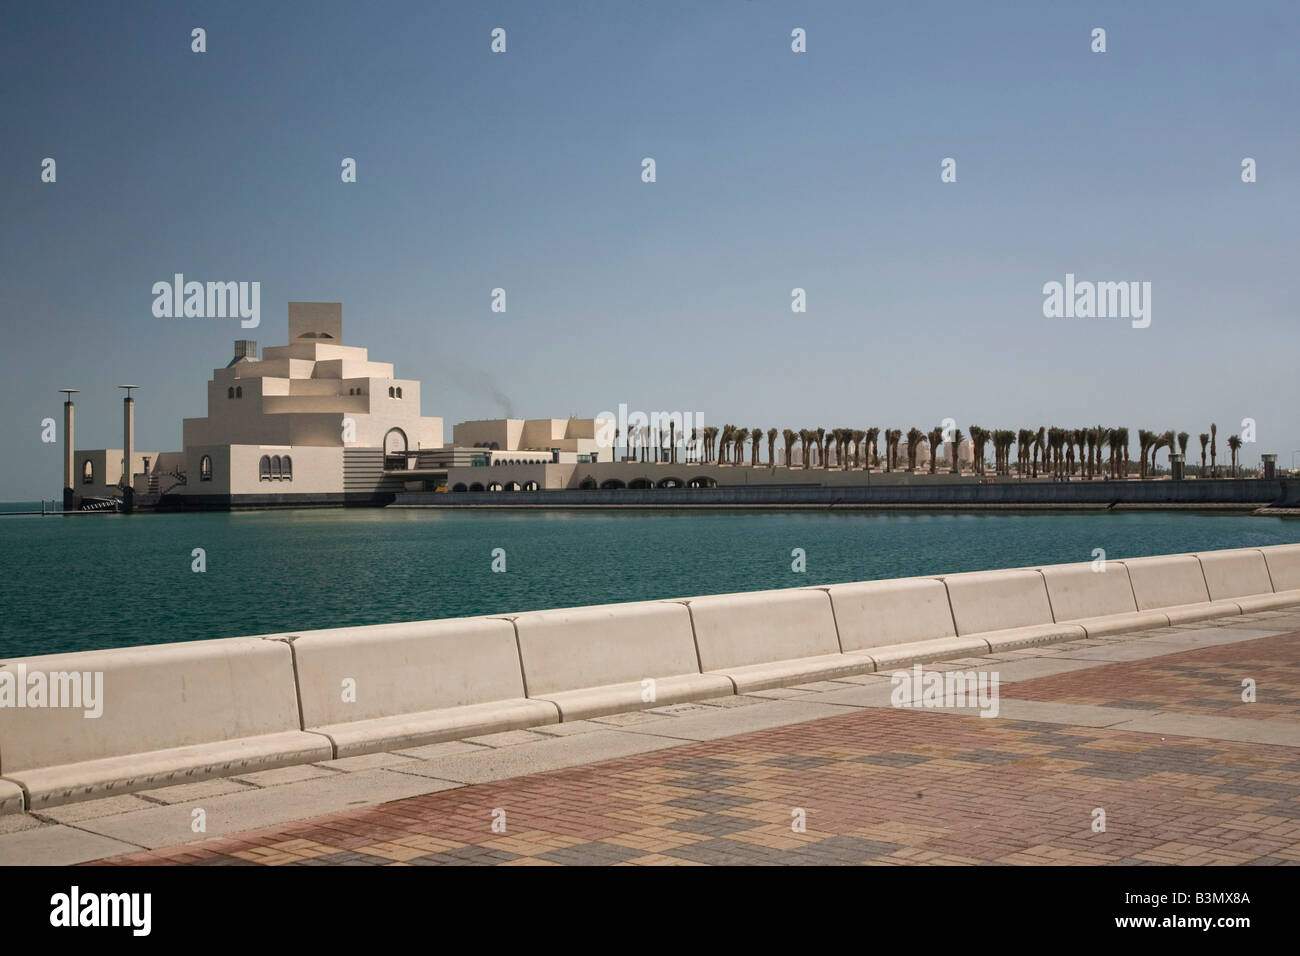 Neues Museum für islamische Kunst in Doha Doha Bay Katar Nahost arabischen Golf Skyline Corniche Skyline Stockfoto